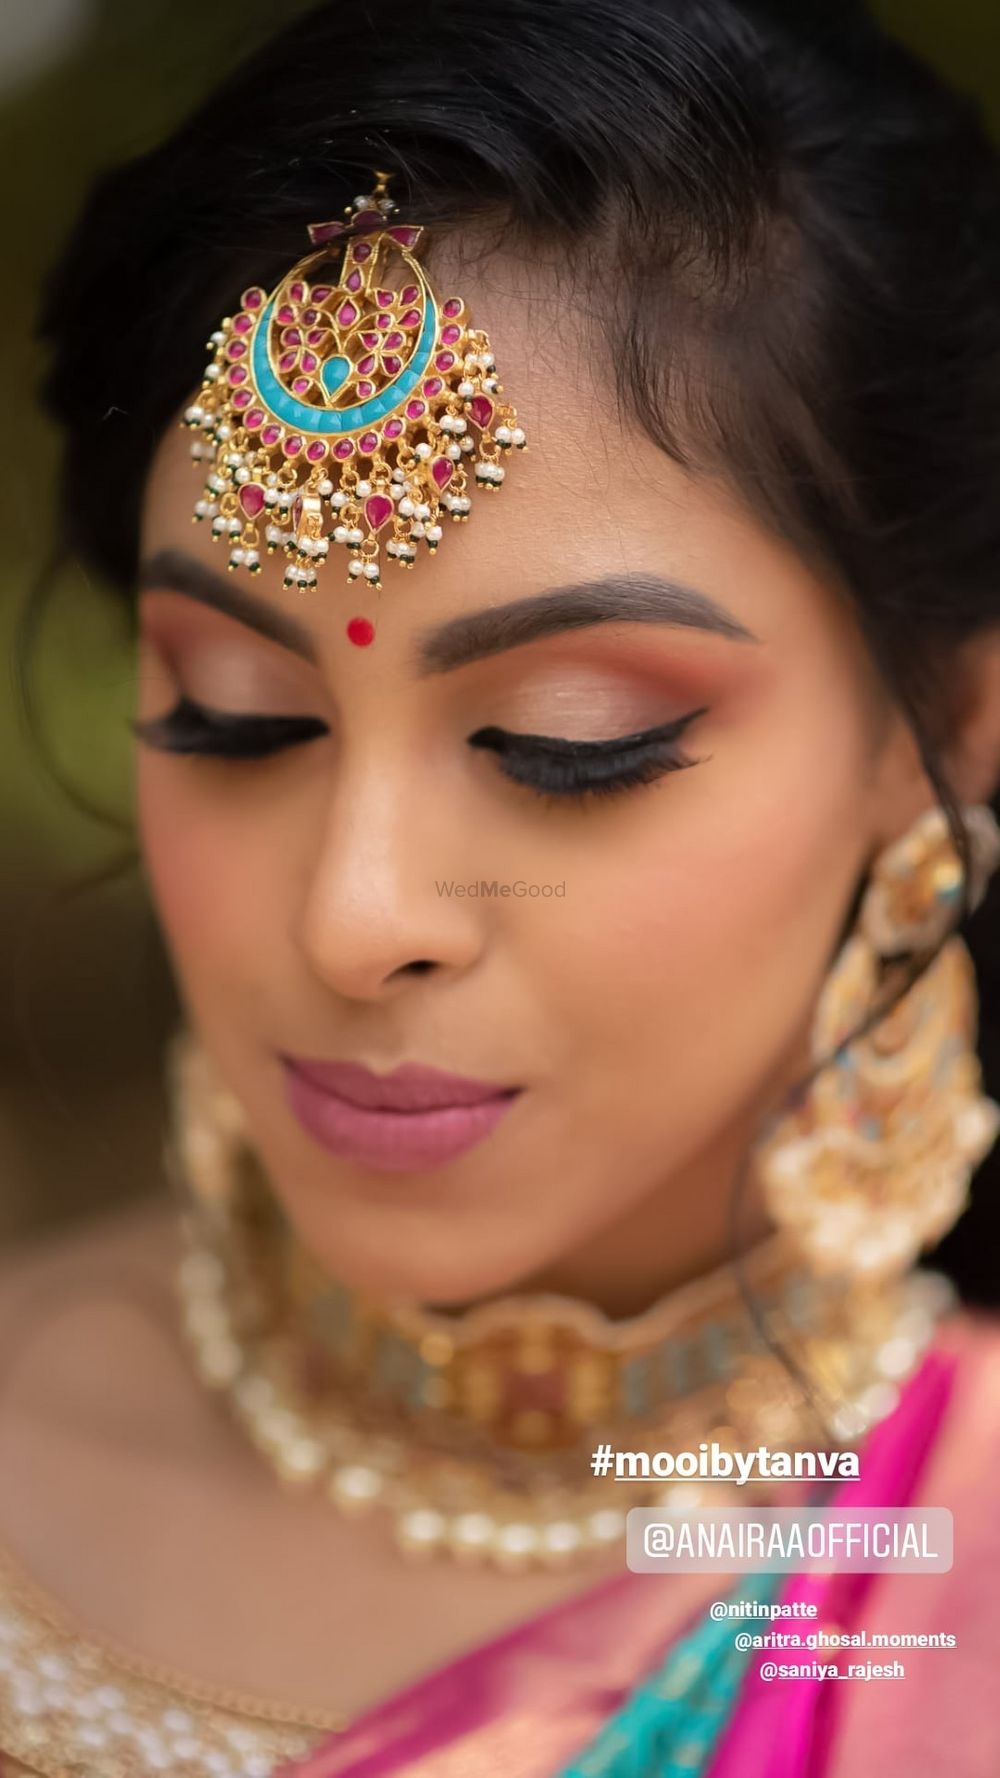 Photo By Mooibytanva Makeup Artistry - Bridal Makeup